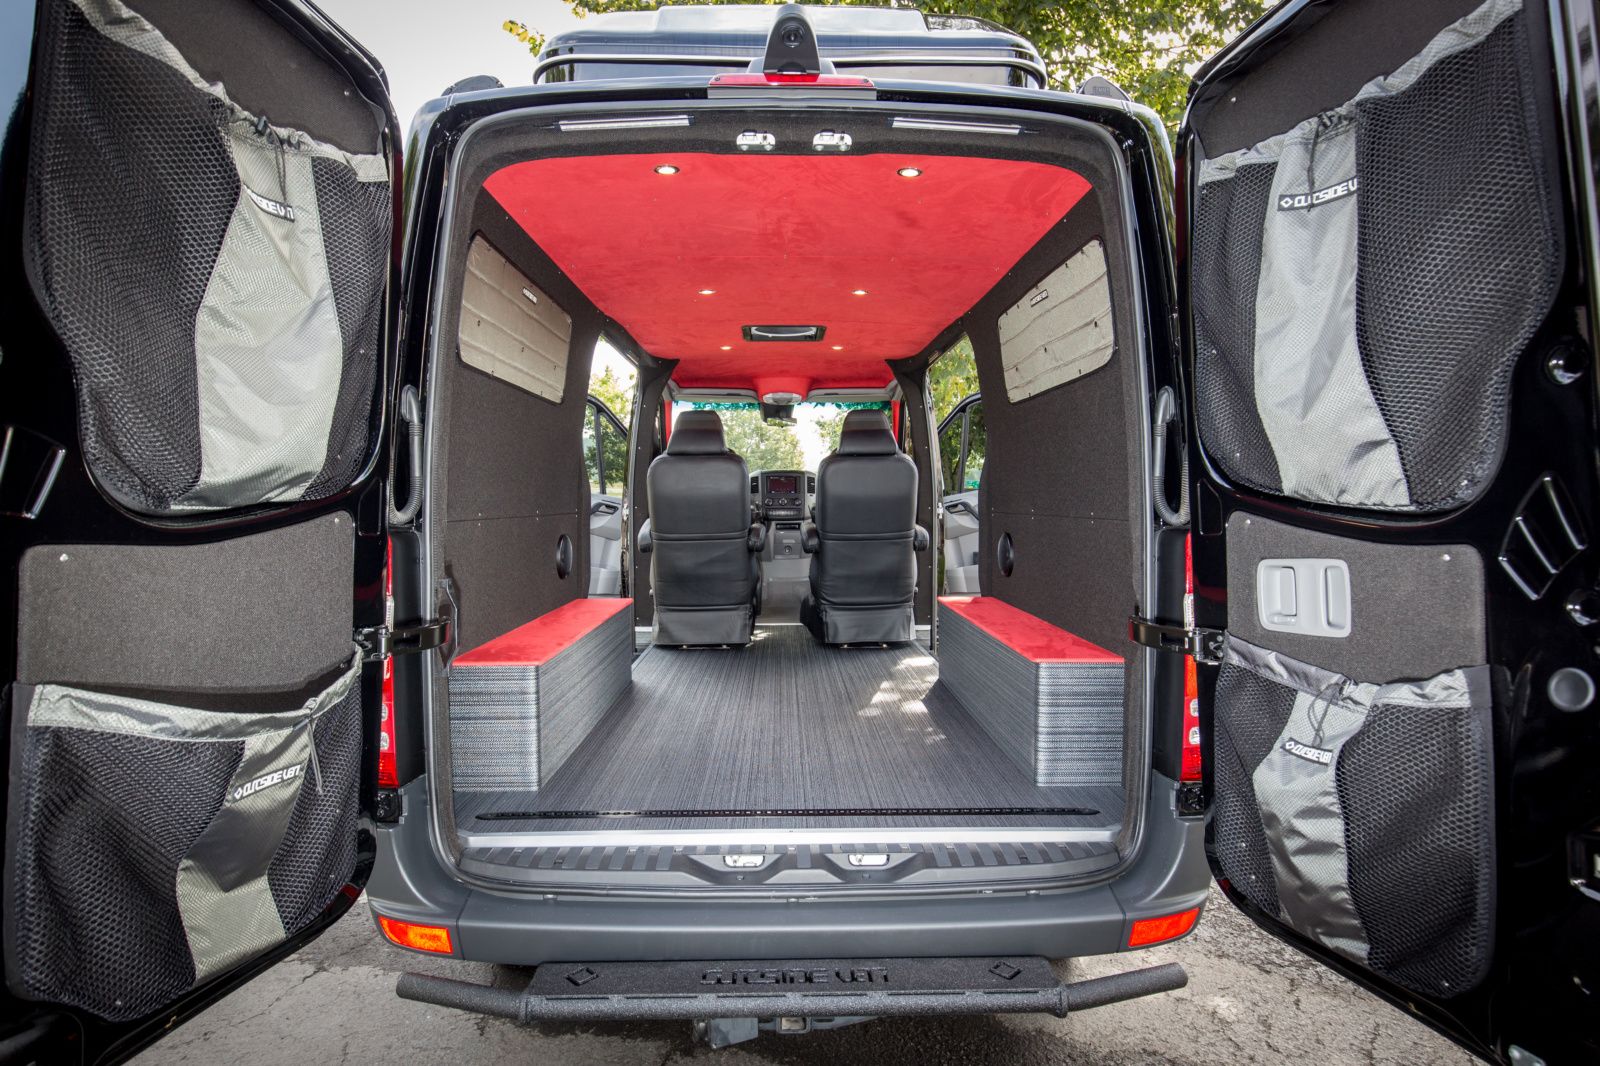 Darkstar – Sprinter conversion by Outside Vans – interior view